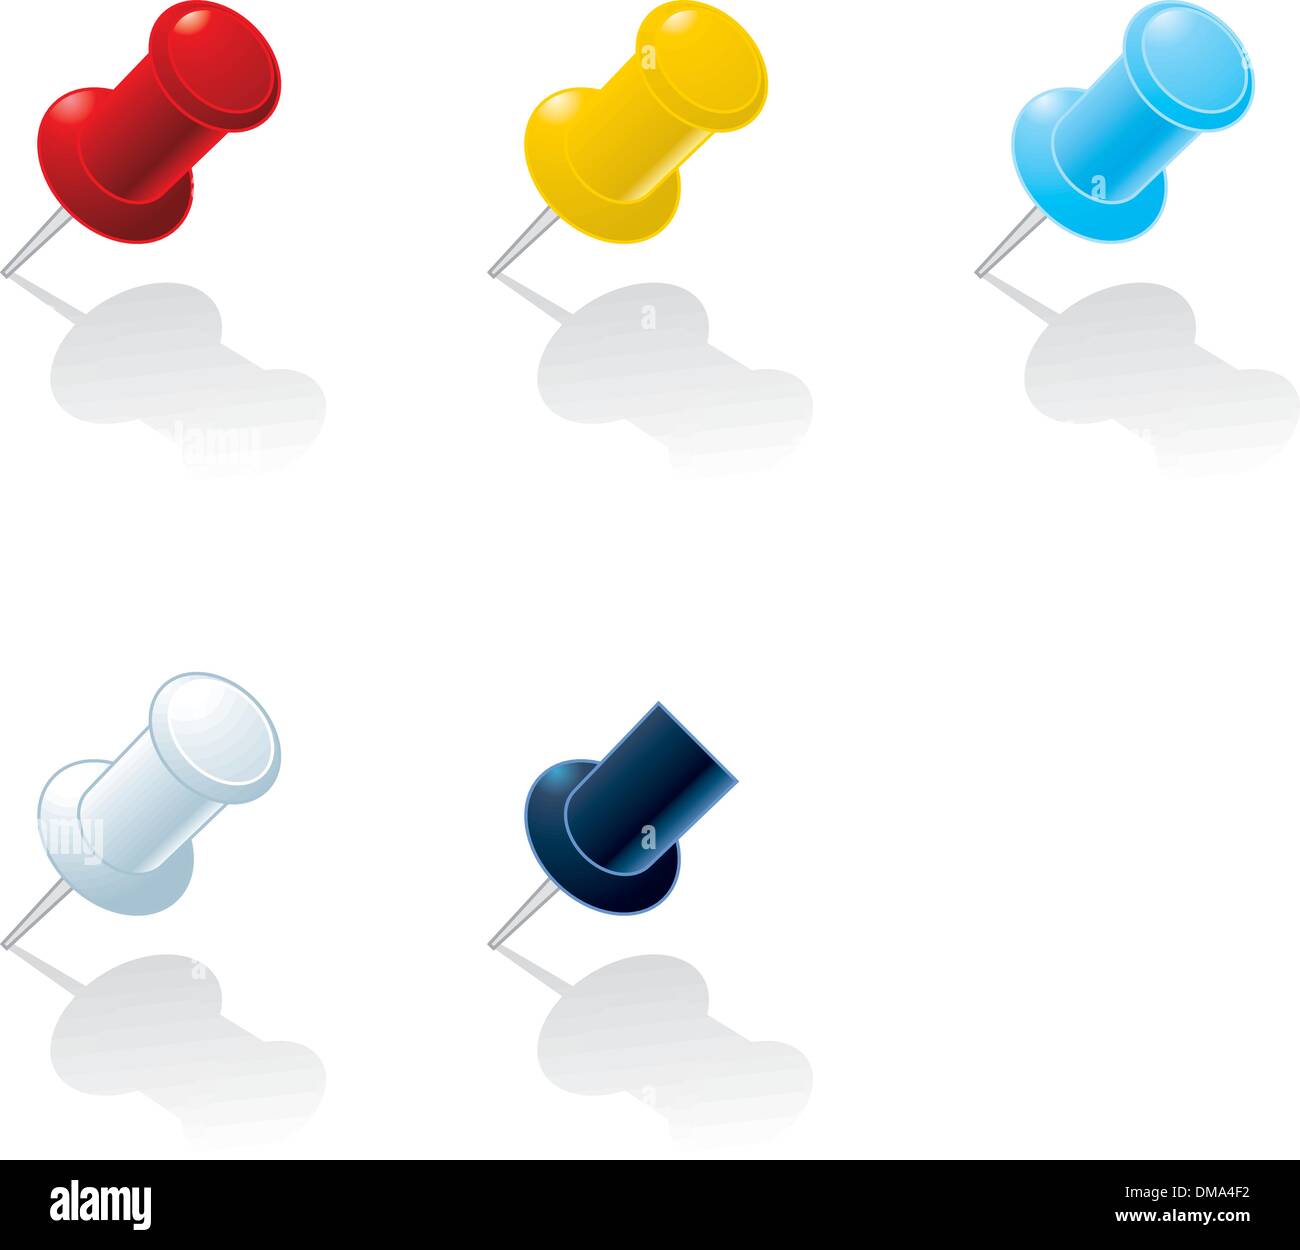 Vektor-Illustration: Push-Pins in verschiedenen Farben Stock Vektor